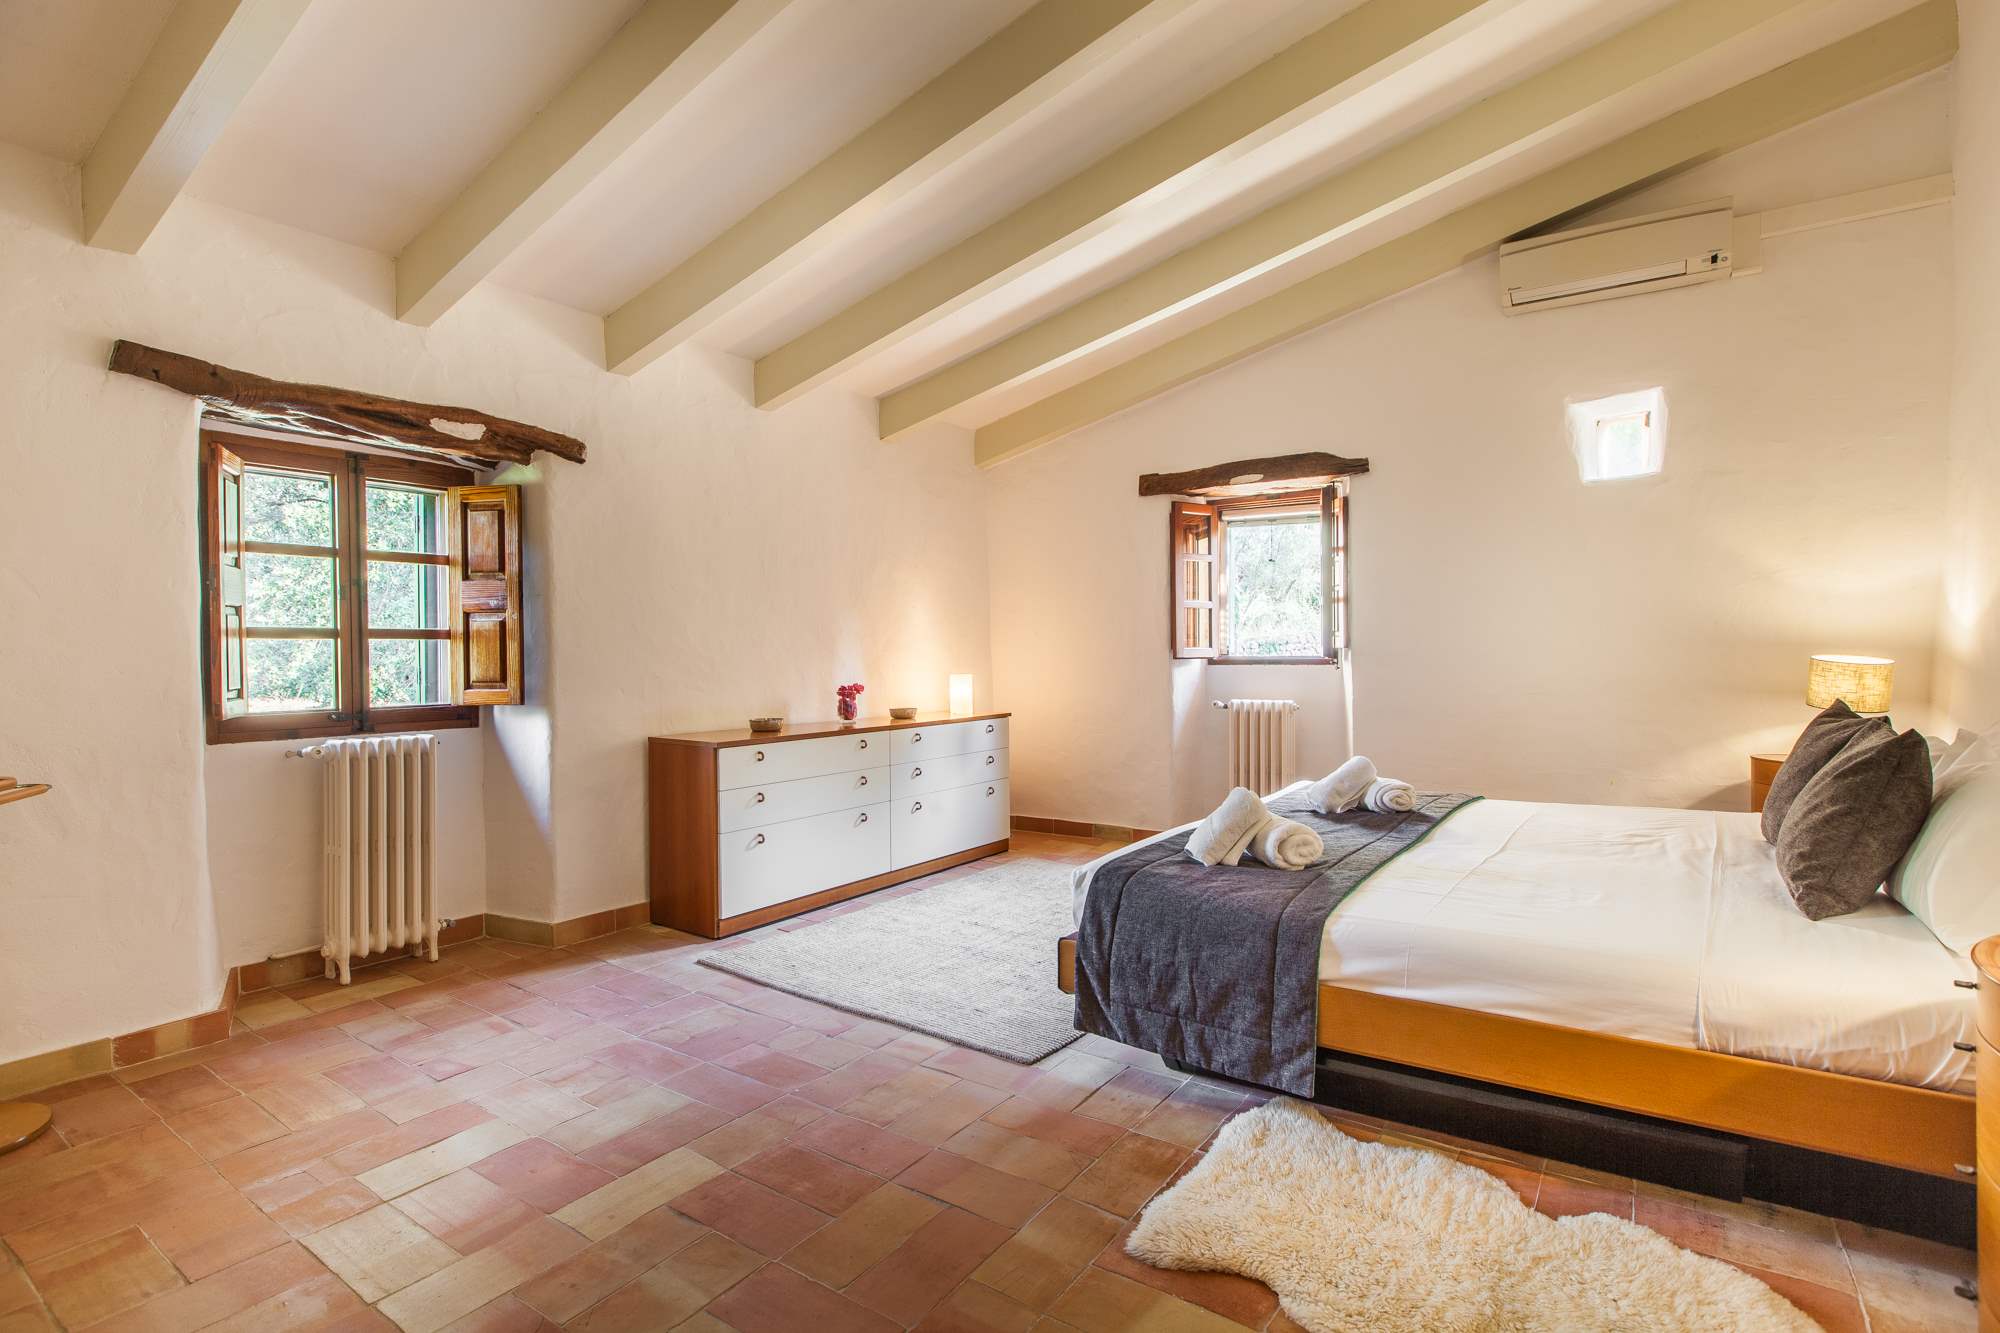 Es Clotal, 4 bedroom, 4 bedroom villa in Pollensa & Puerto Pollensa, Majorca Photo #17